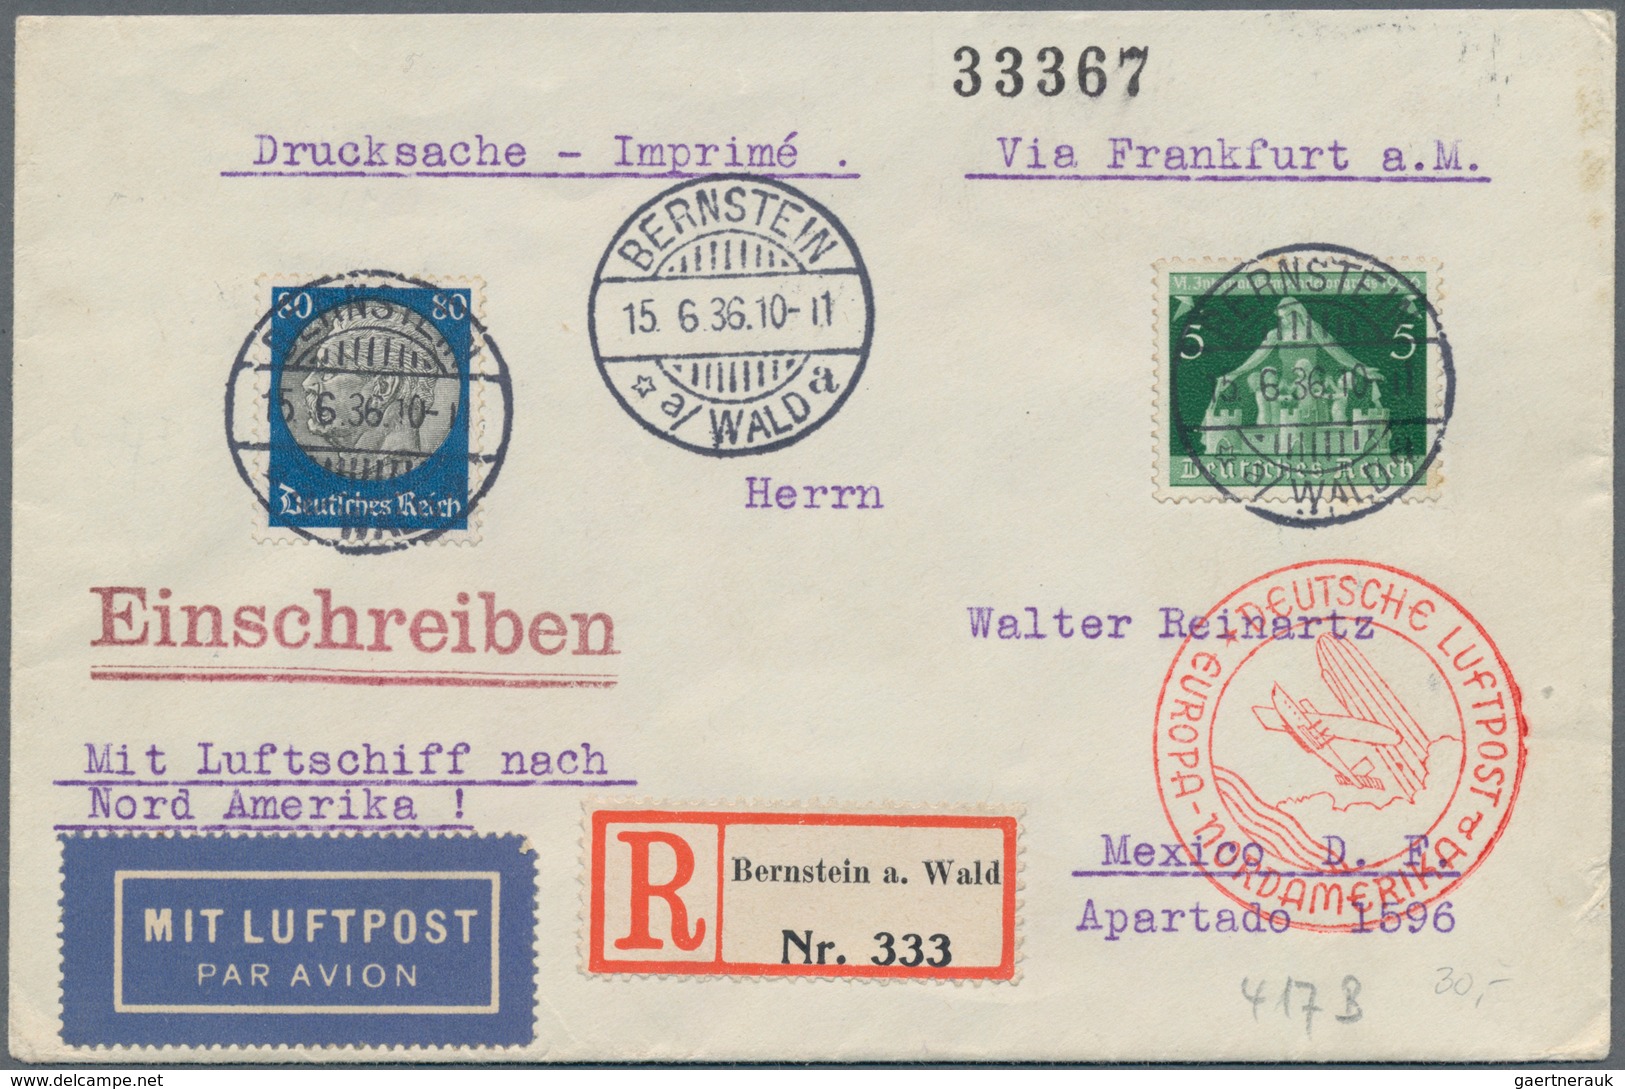 Deutsches Reich - 3. Reich: 1933/1945, umfangreiche, vorsortierte Sammlung Marken und Belege nach St